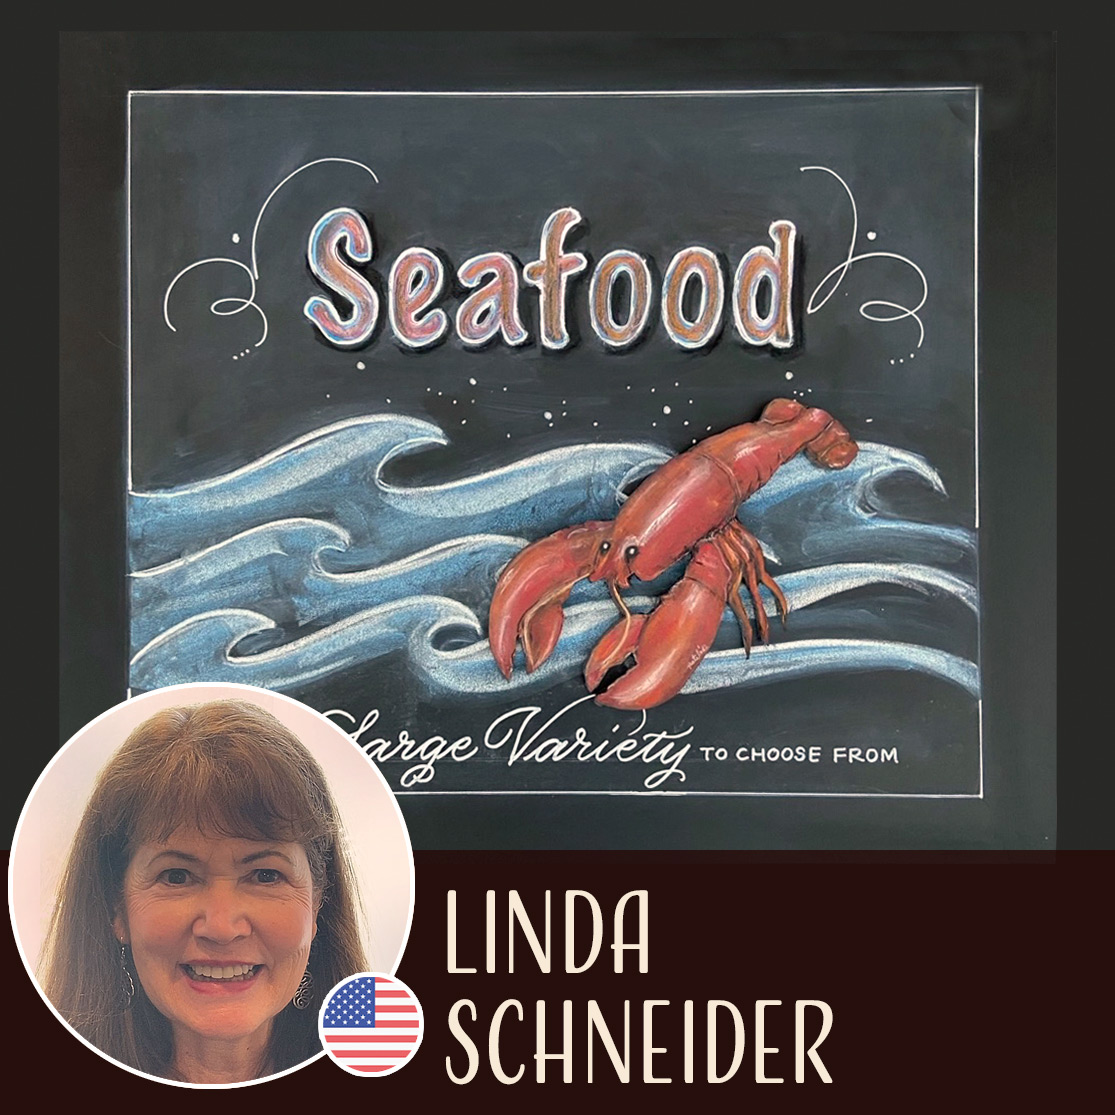 Linda Schneider